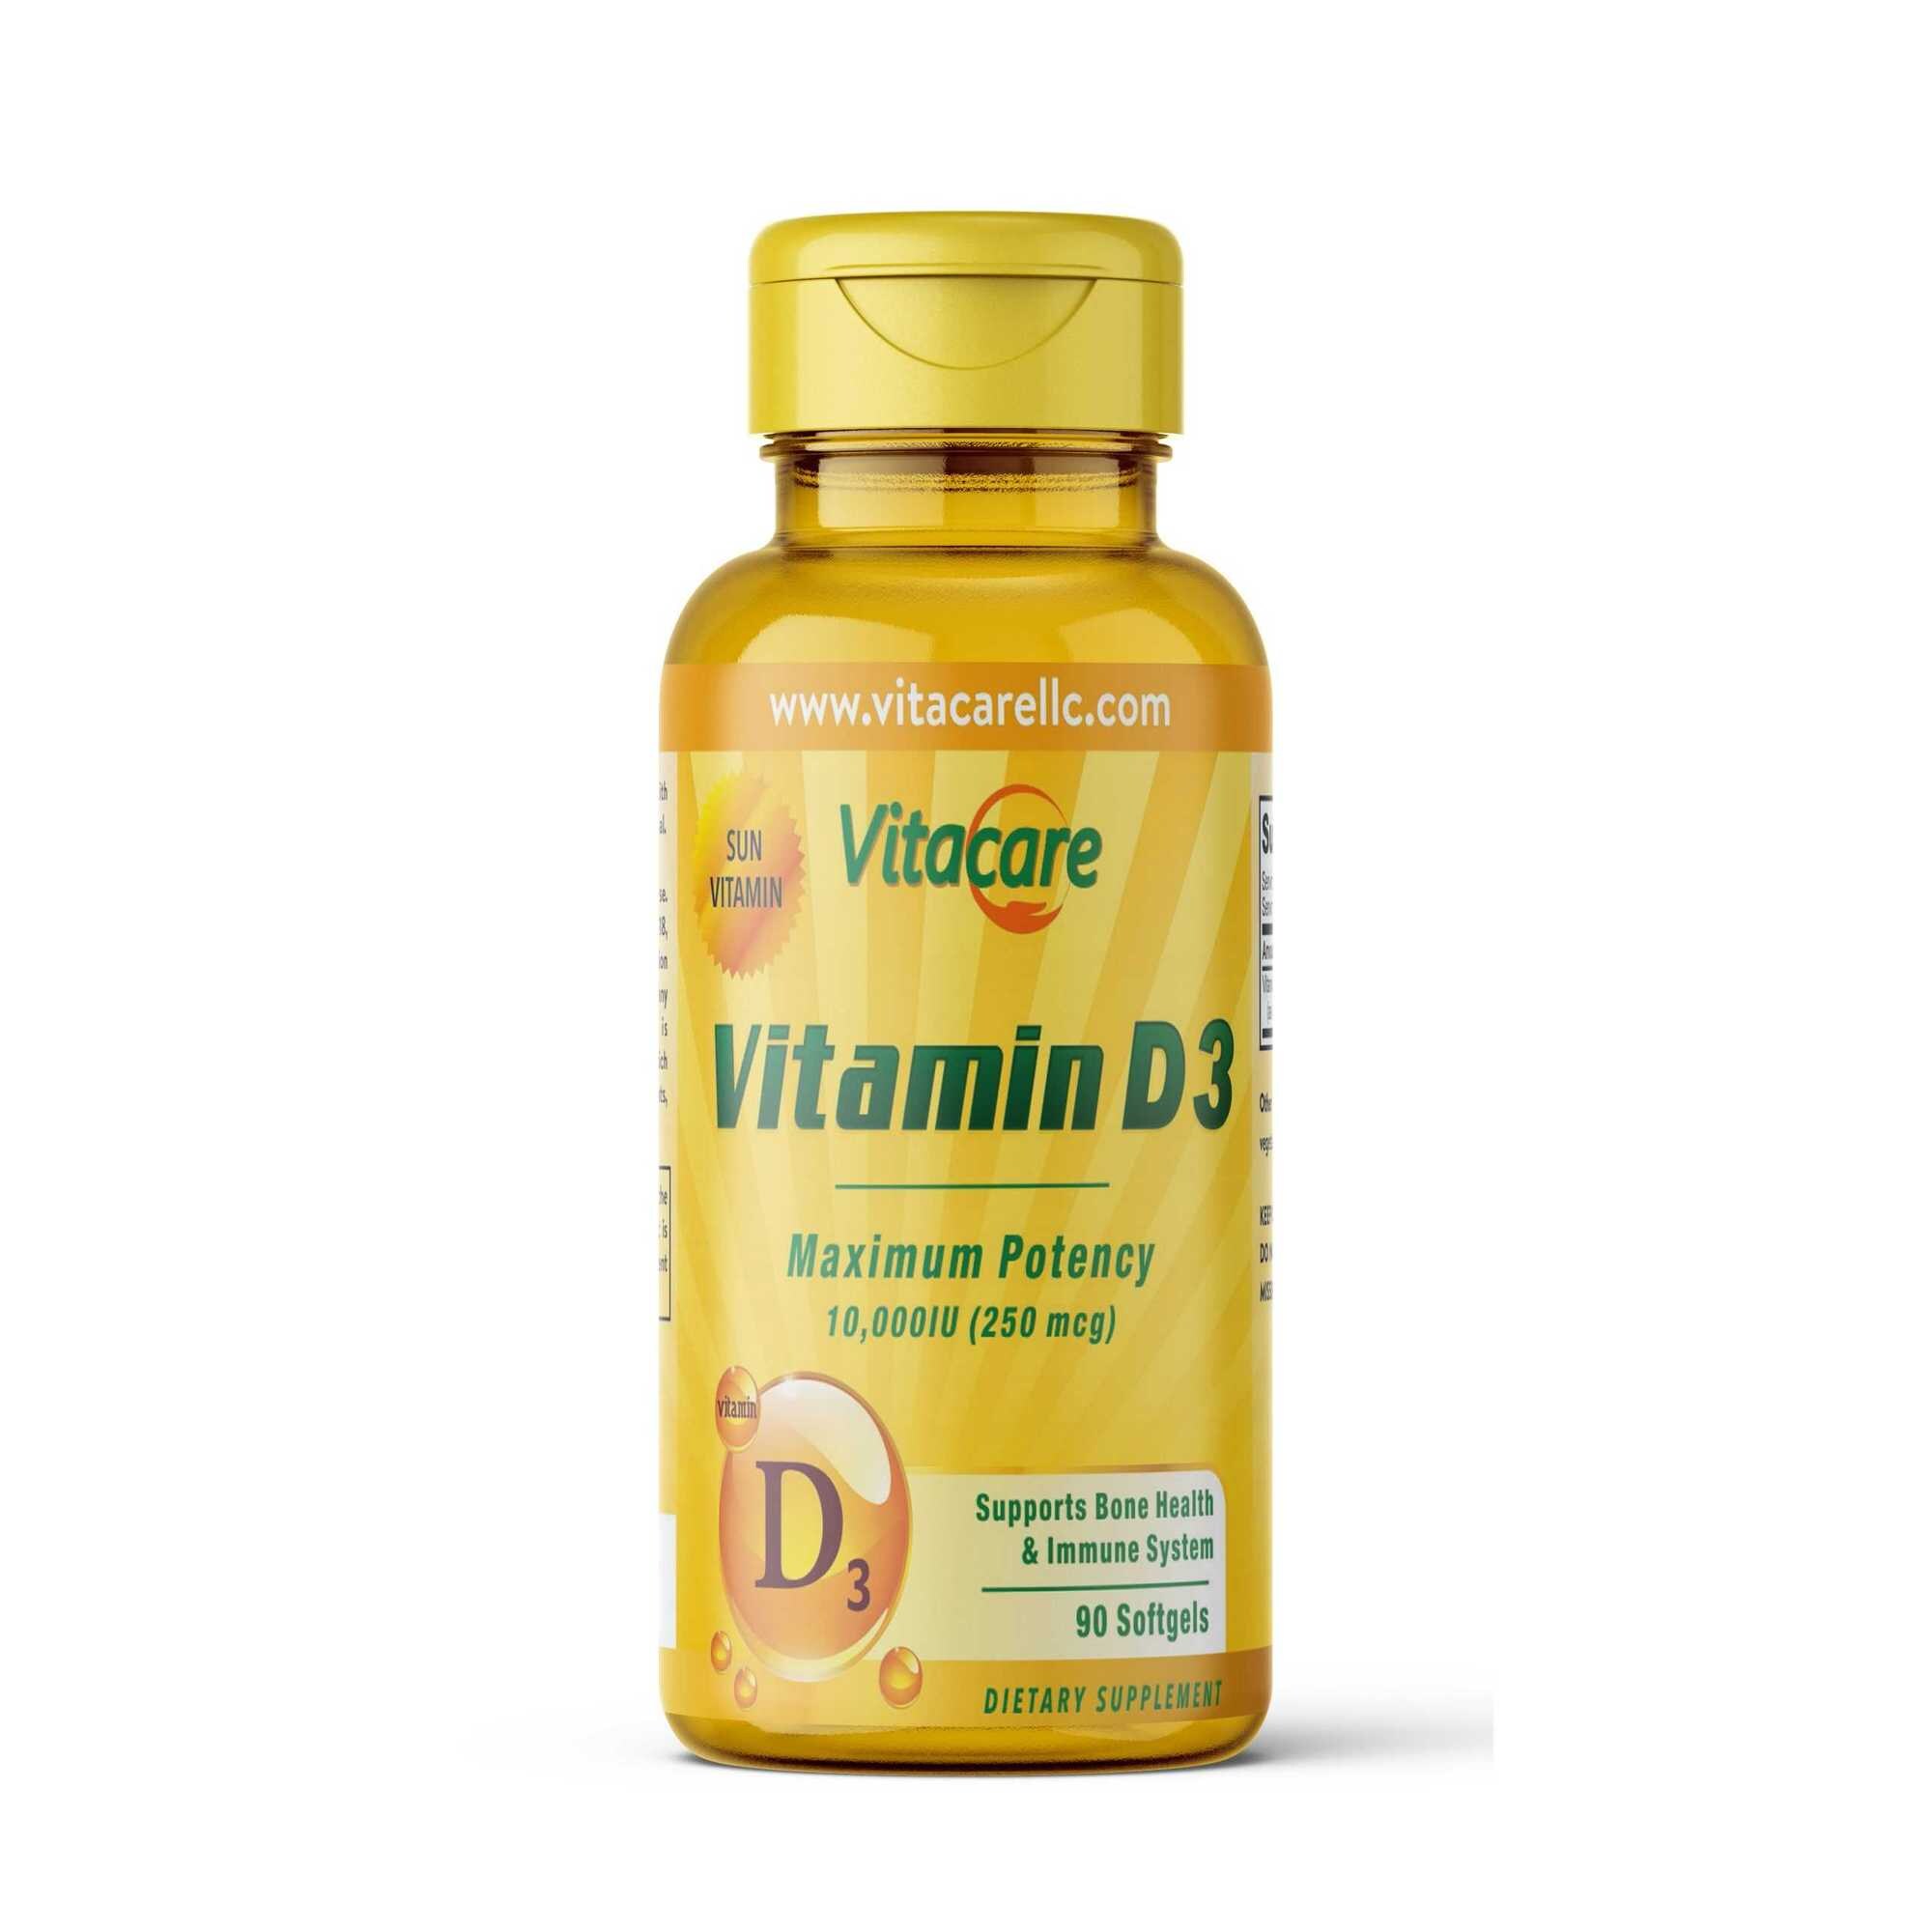 Vita Care Vitamin D3 Maximum Potency 10000 IU, 90 Softgels